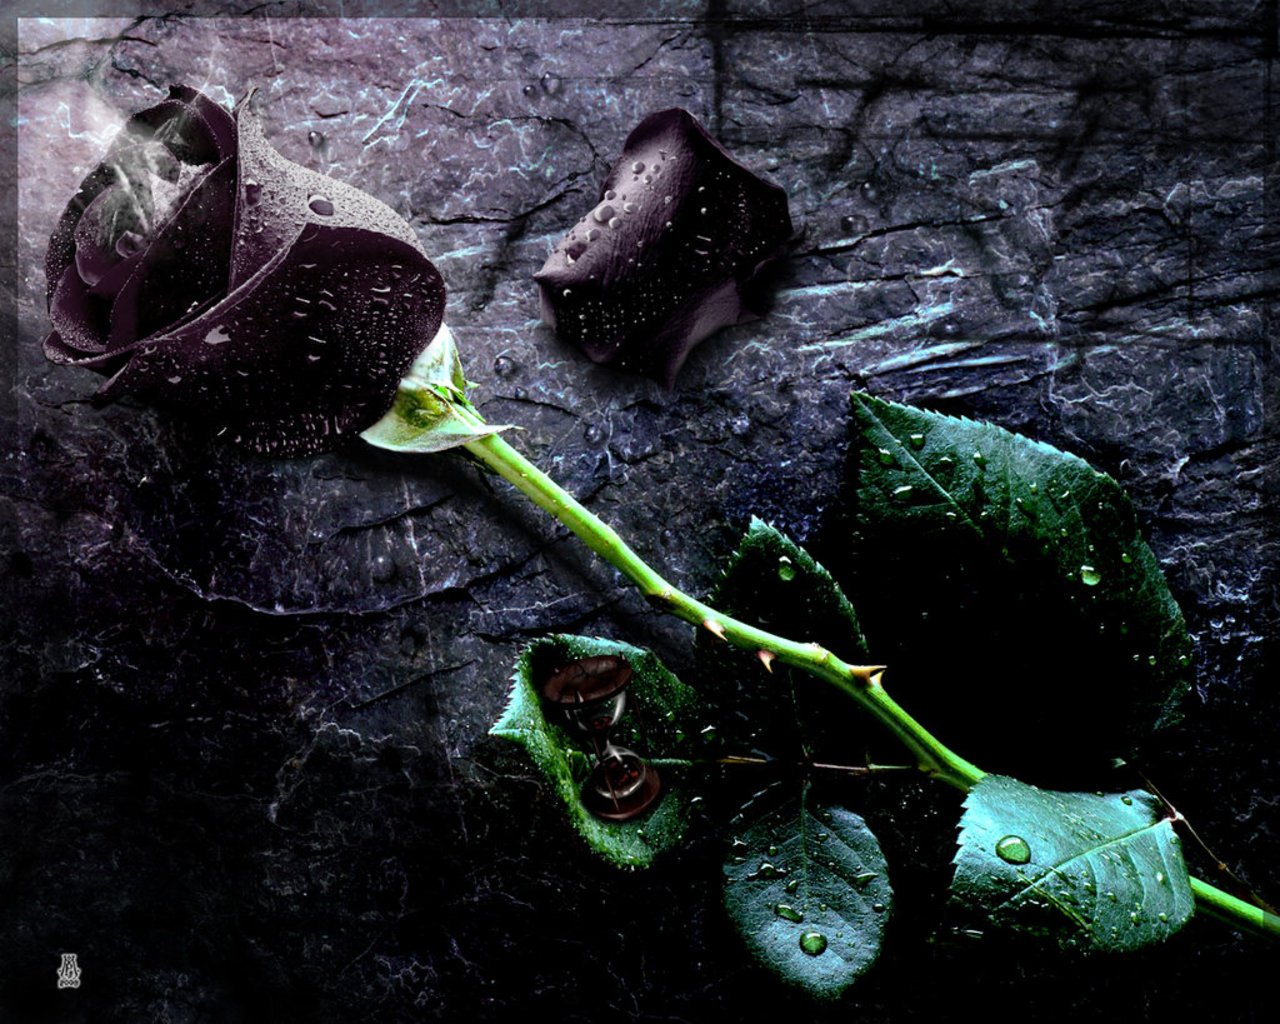 Free download wallpaper black rose rose flower pictures black rose